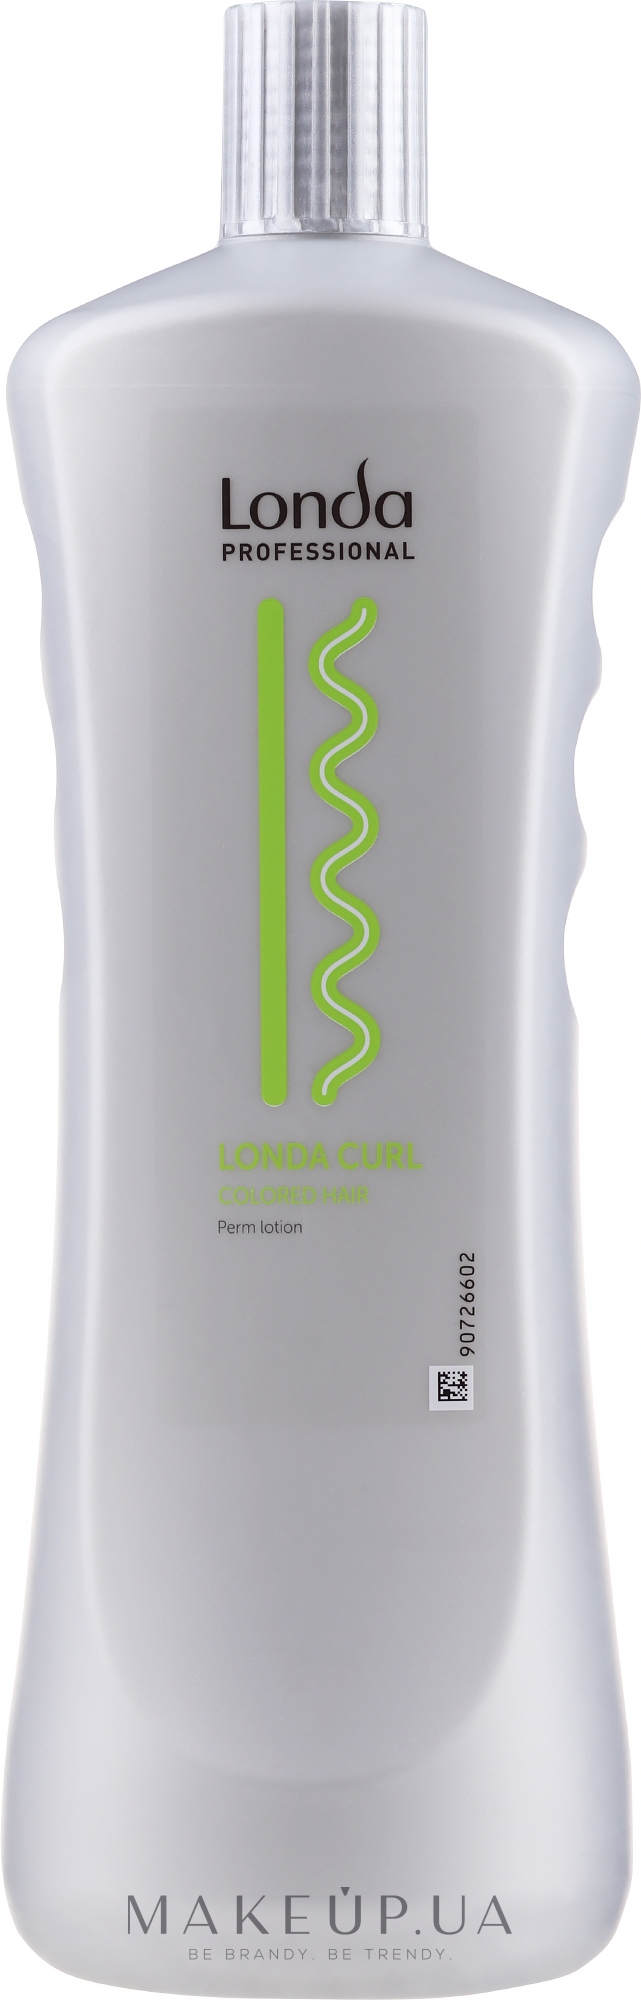 Лосьон для химической завивки для окрашенных волос - Londa Professional Londawave Wellfluid S — фото 1000ml